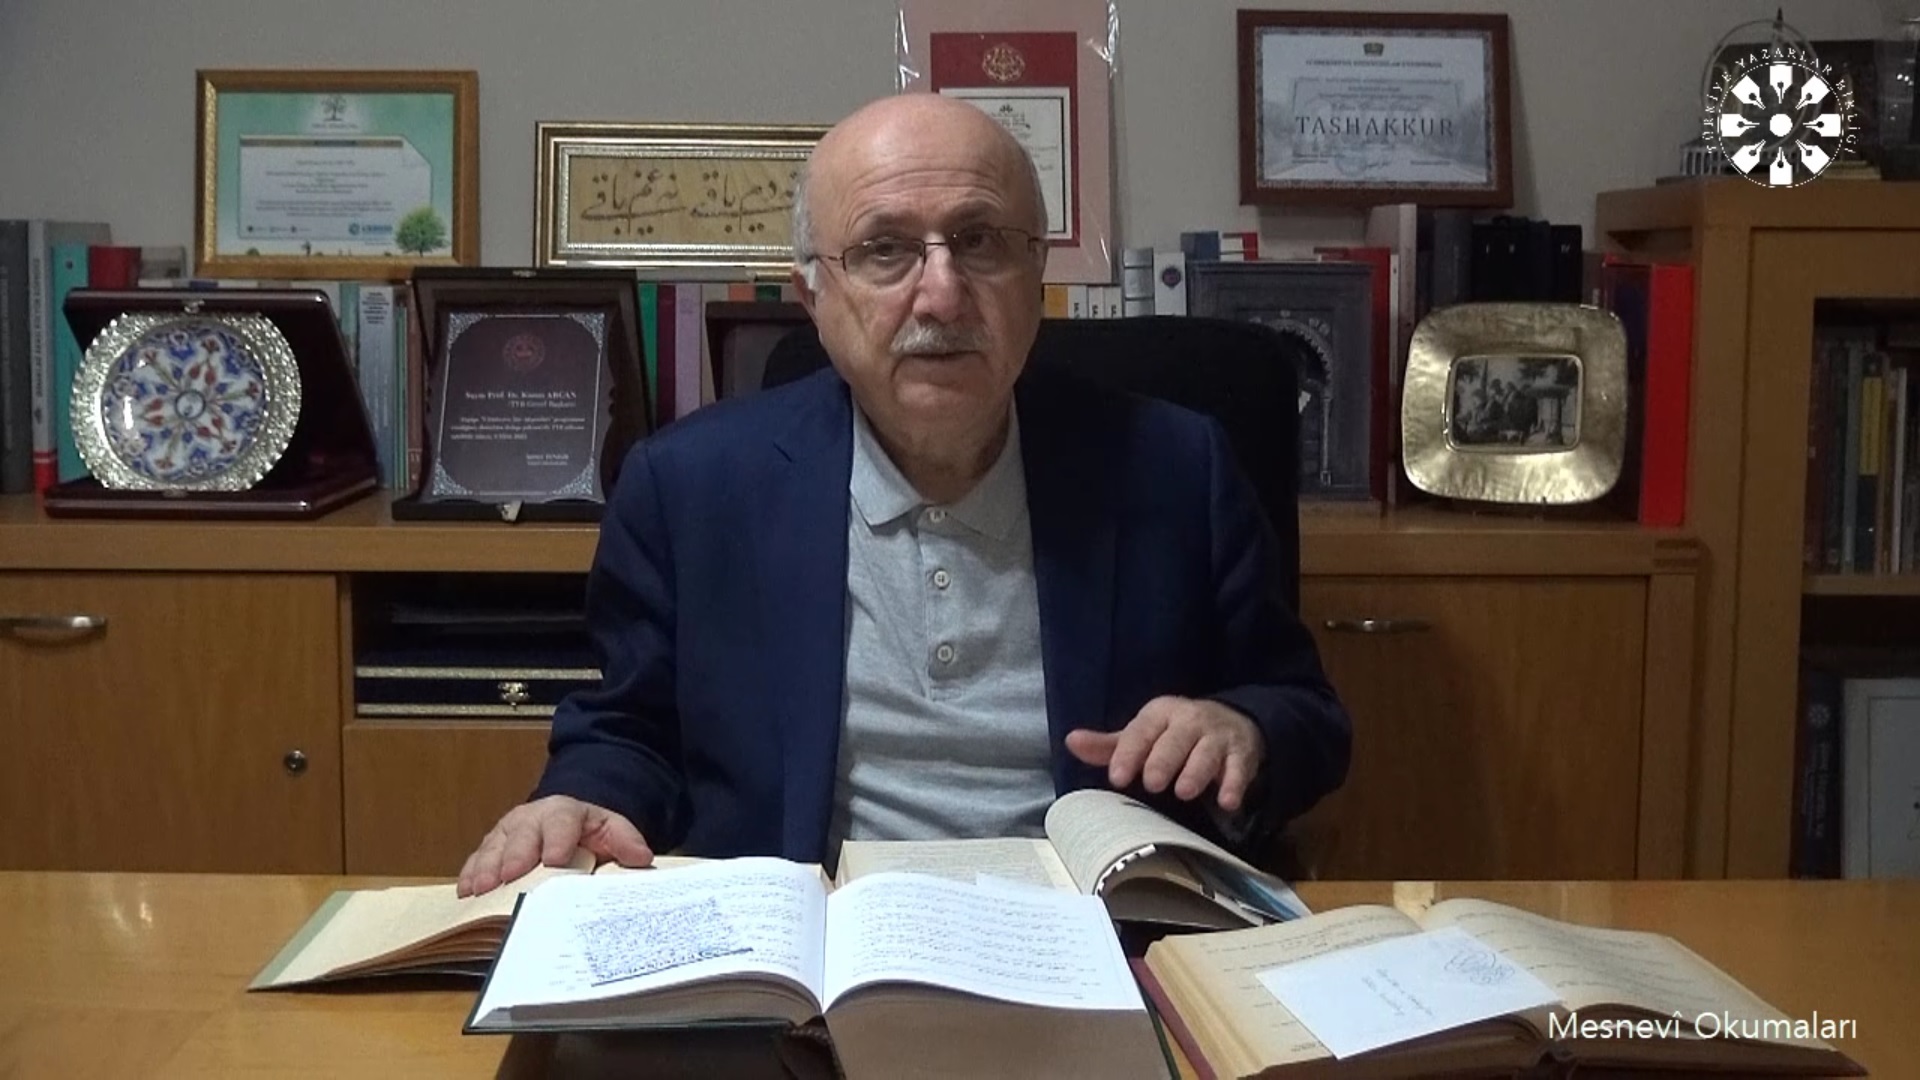 Mesnevî Okumaları -195- Prof. Dr. Adnan Karaismailoğlu